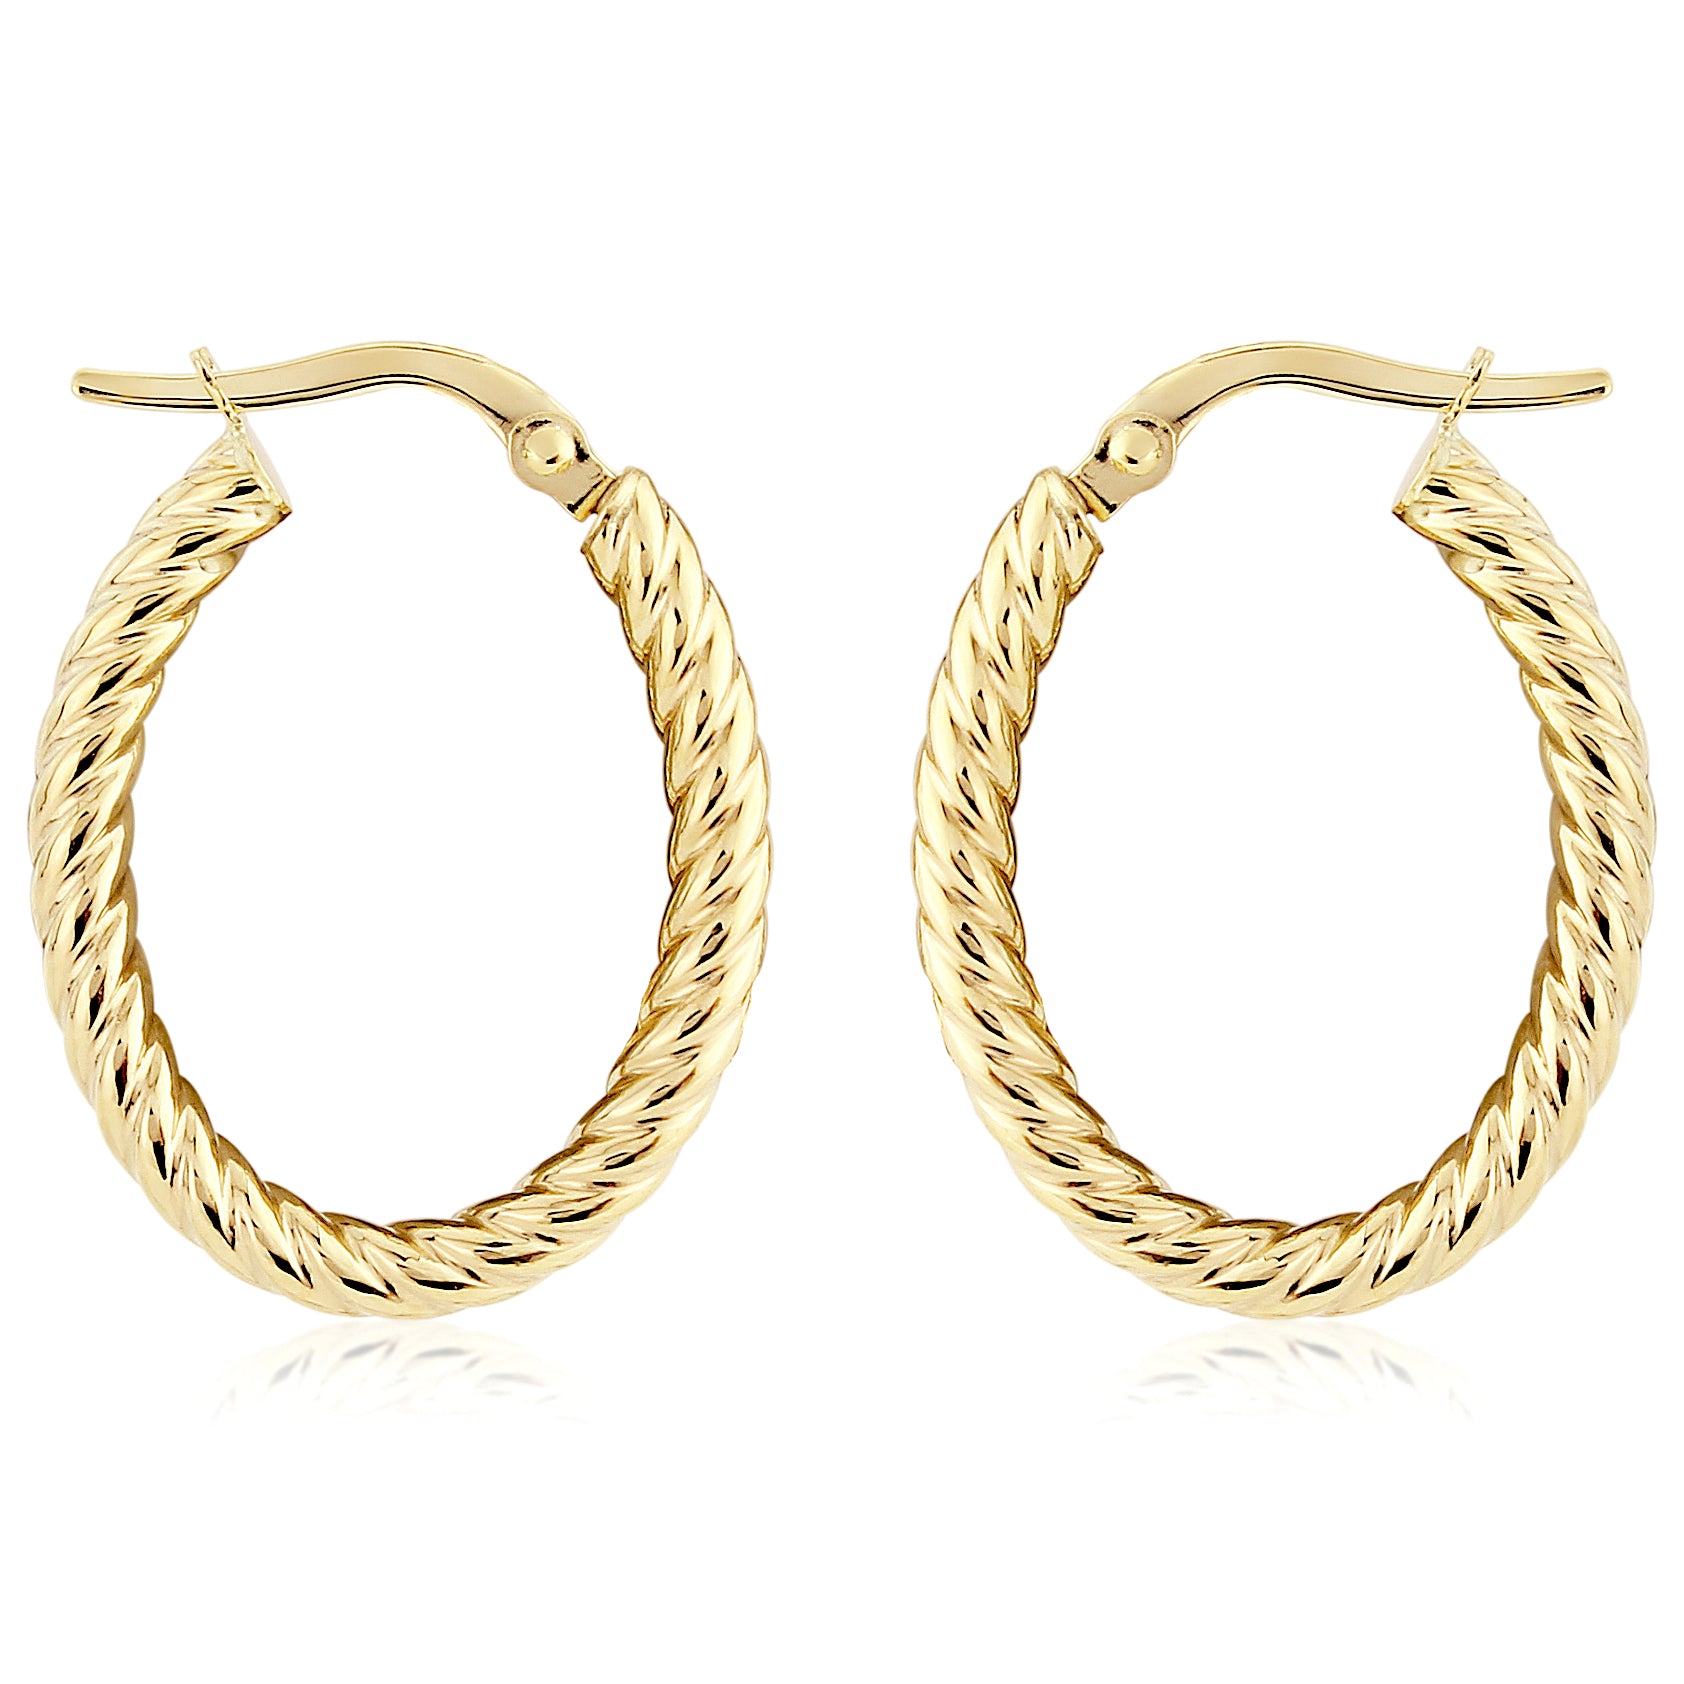 Ladies 9ct Gold  Oval Twist Rope Hoop Earrings - 15x20mm - ERNR02846